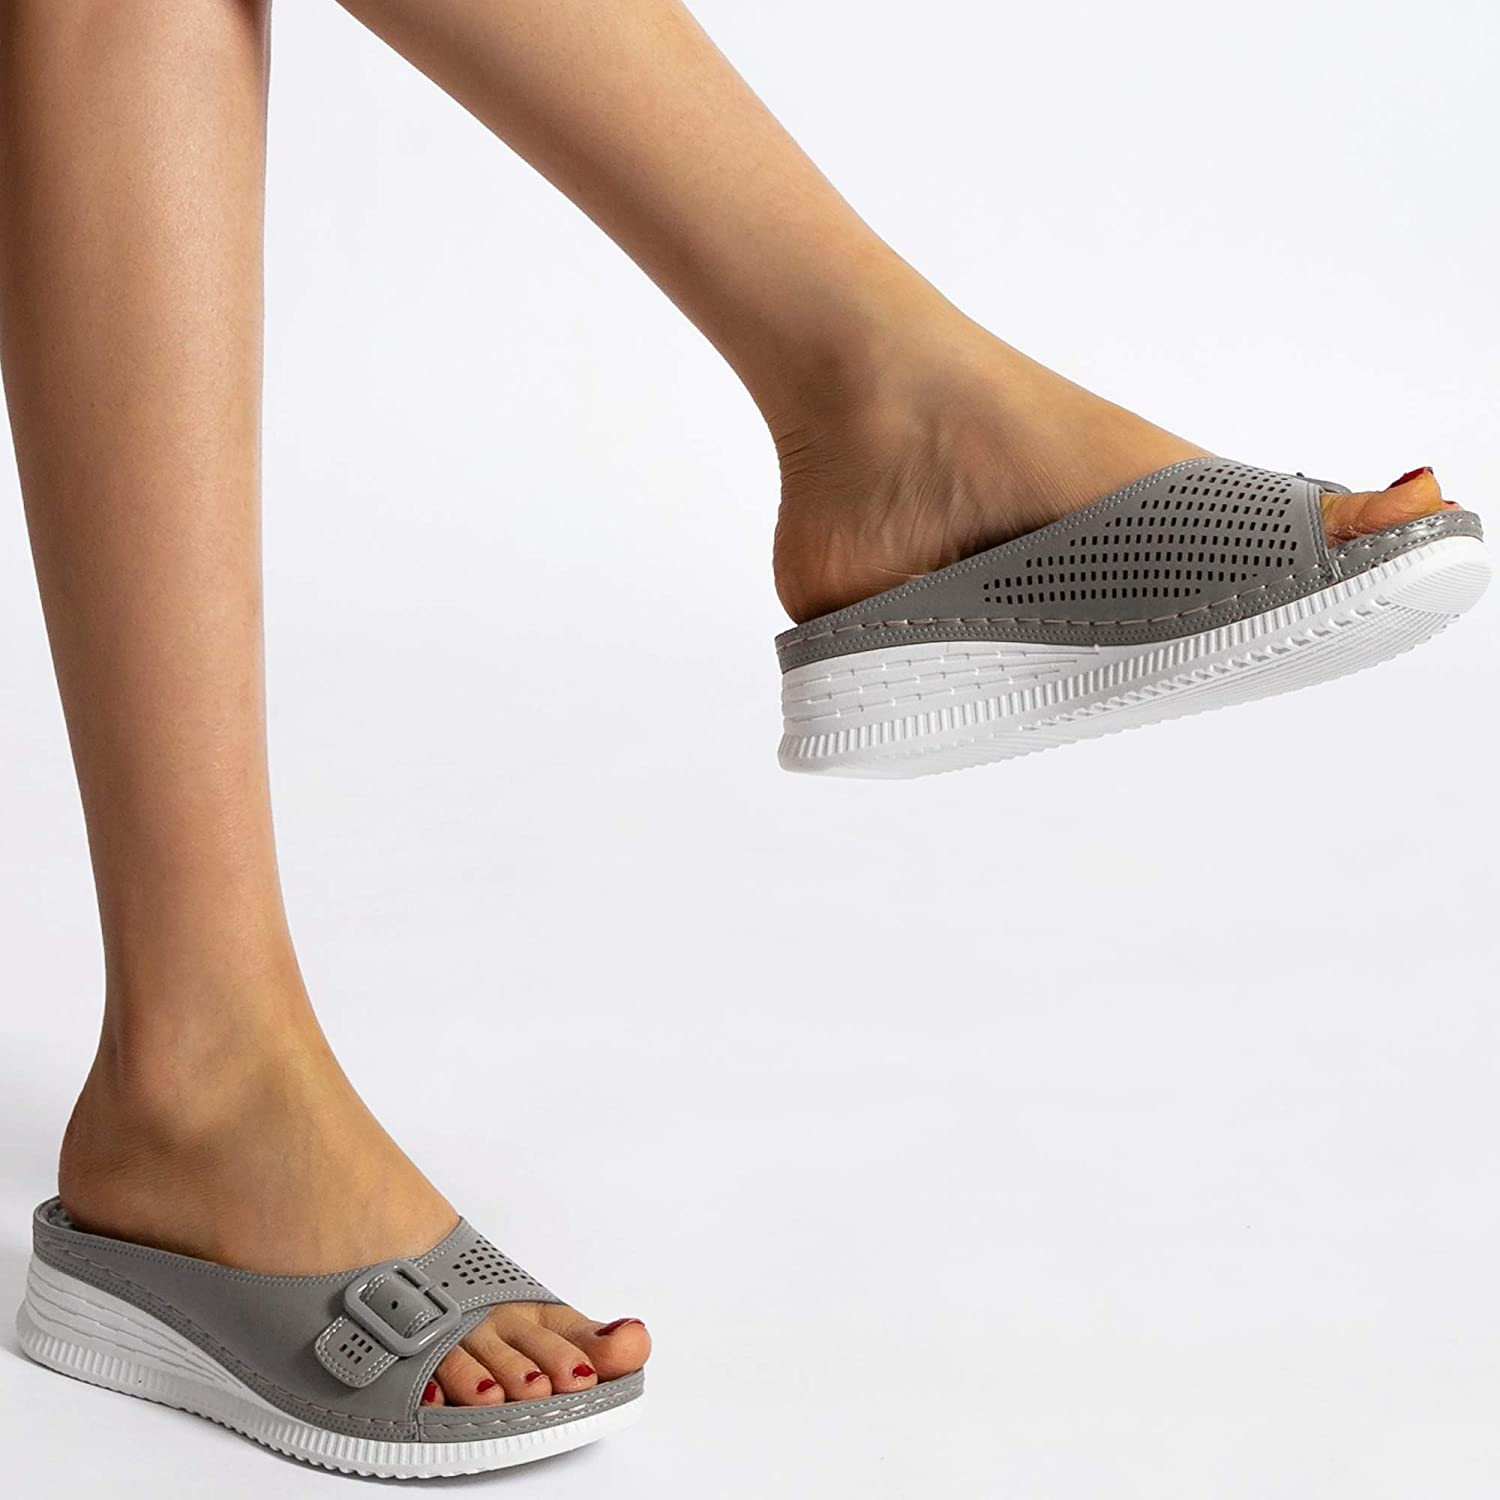 ChayChax Sandalias con Punta Abierta para Mujer Mules de Cuña Cómodas Pantuflas de Cuero Moda Plataforma Zapatillas de Verano Antideslizante 